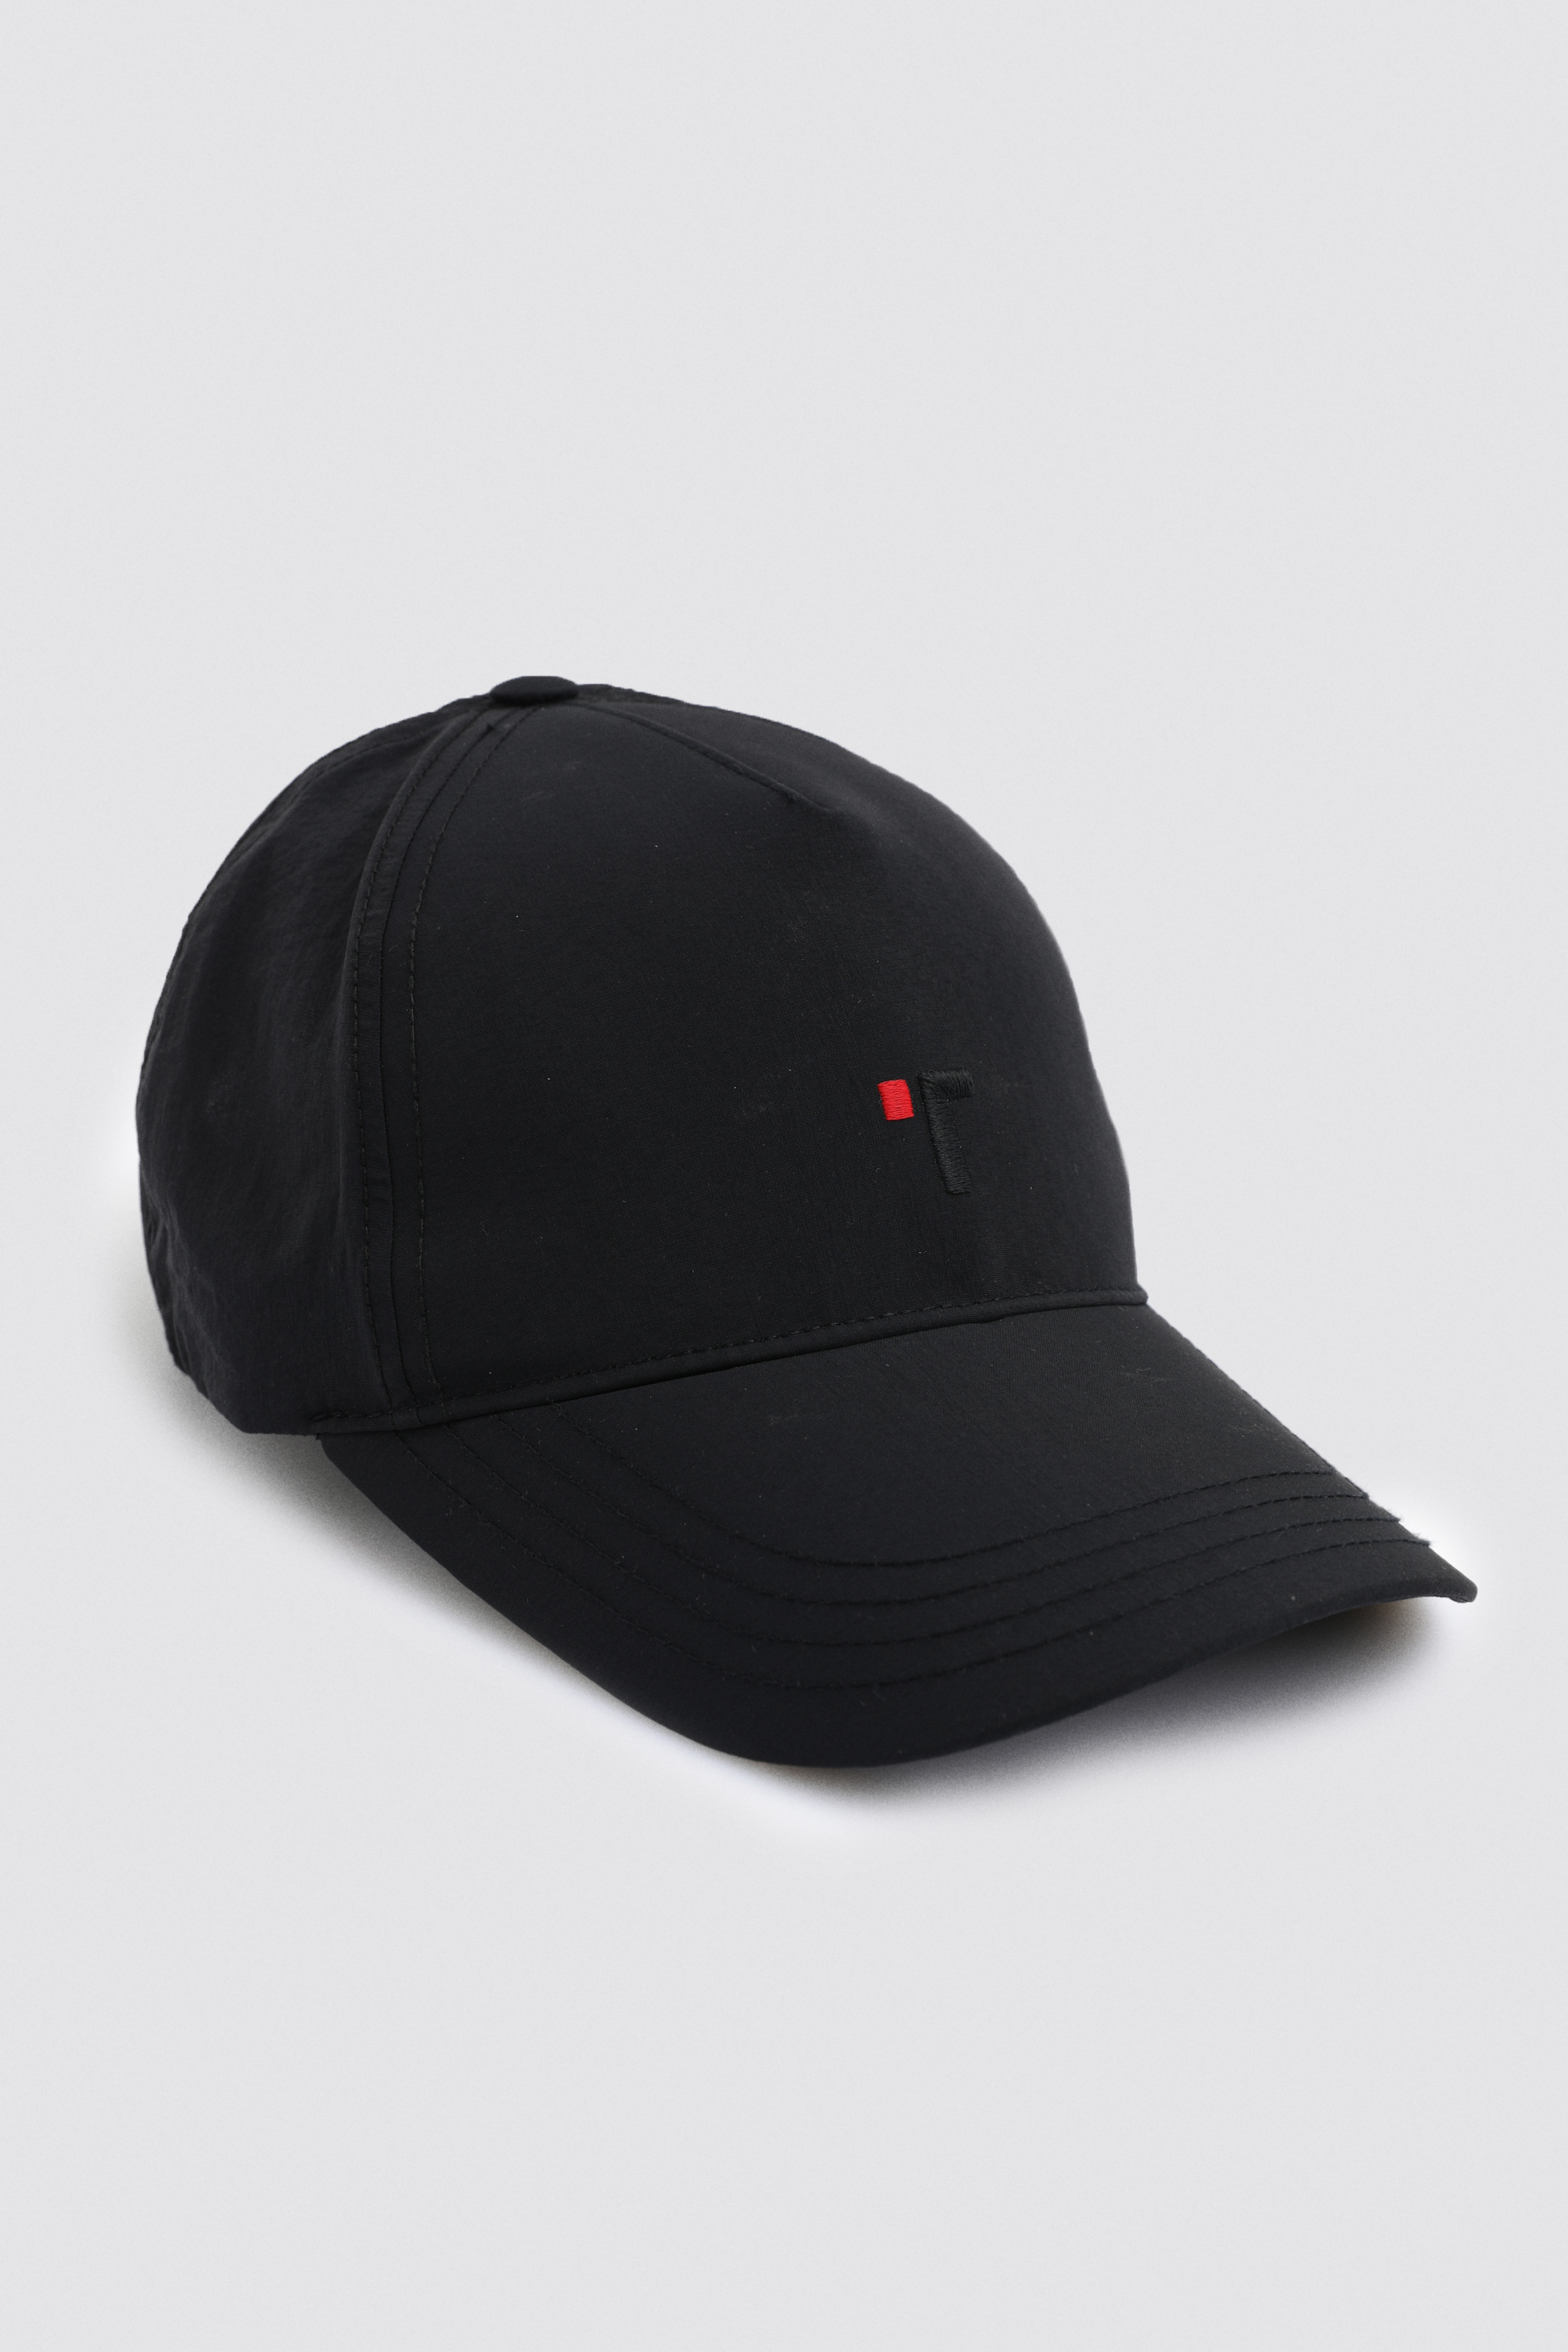 Damat Tween Tween Siyah %100 Pamuk Şapka. 1